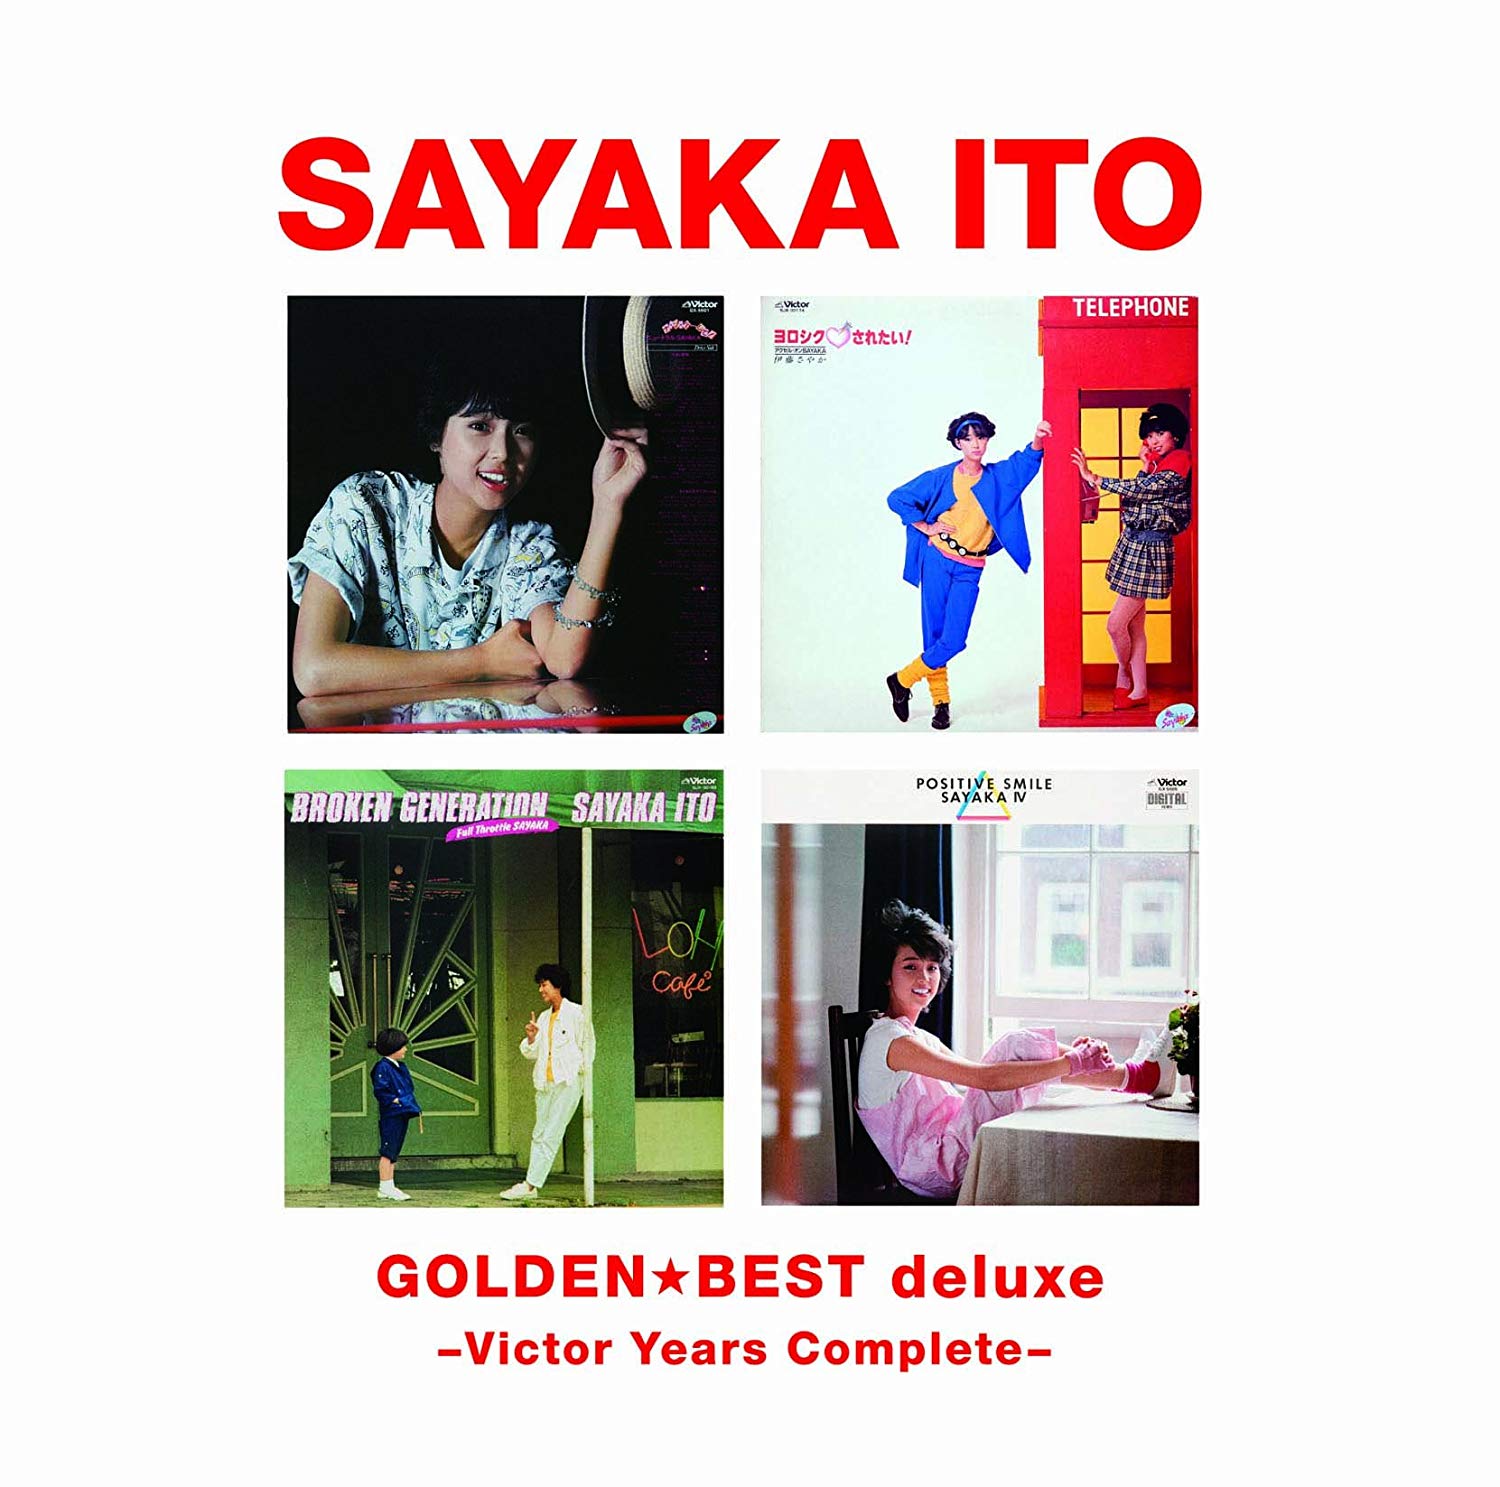 Audio Cd Sayaka Ito - Golden Best Deluxe Ito Sayaka (3 Cd) NUOVO SIGILLATO, EDIZIONE DEL 18/08/2010 SUBITO DISPONIBILE